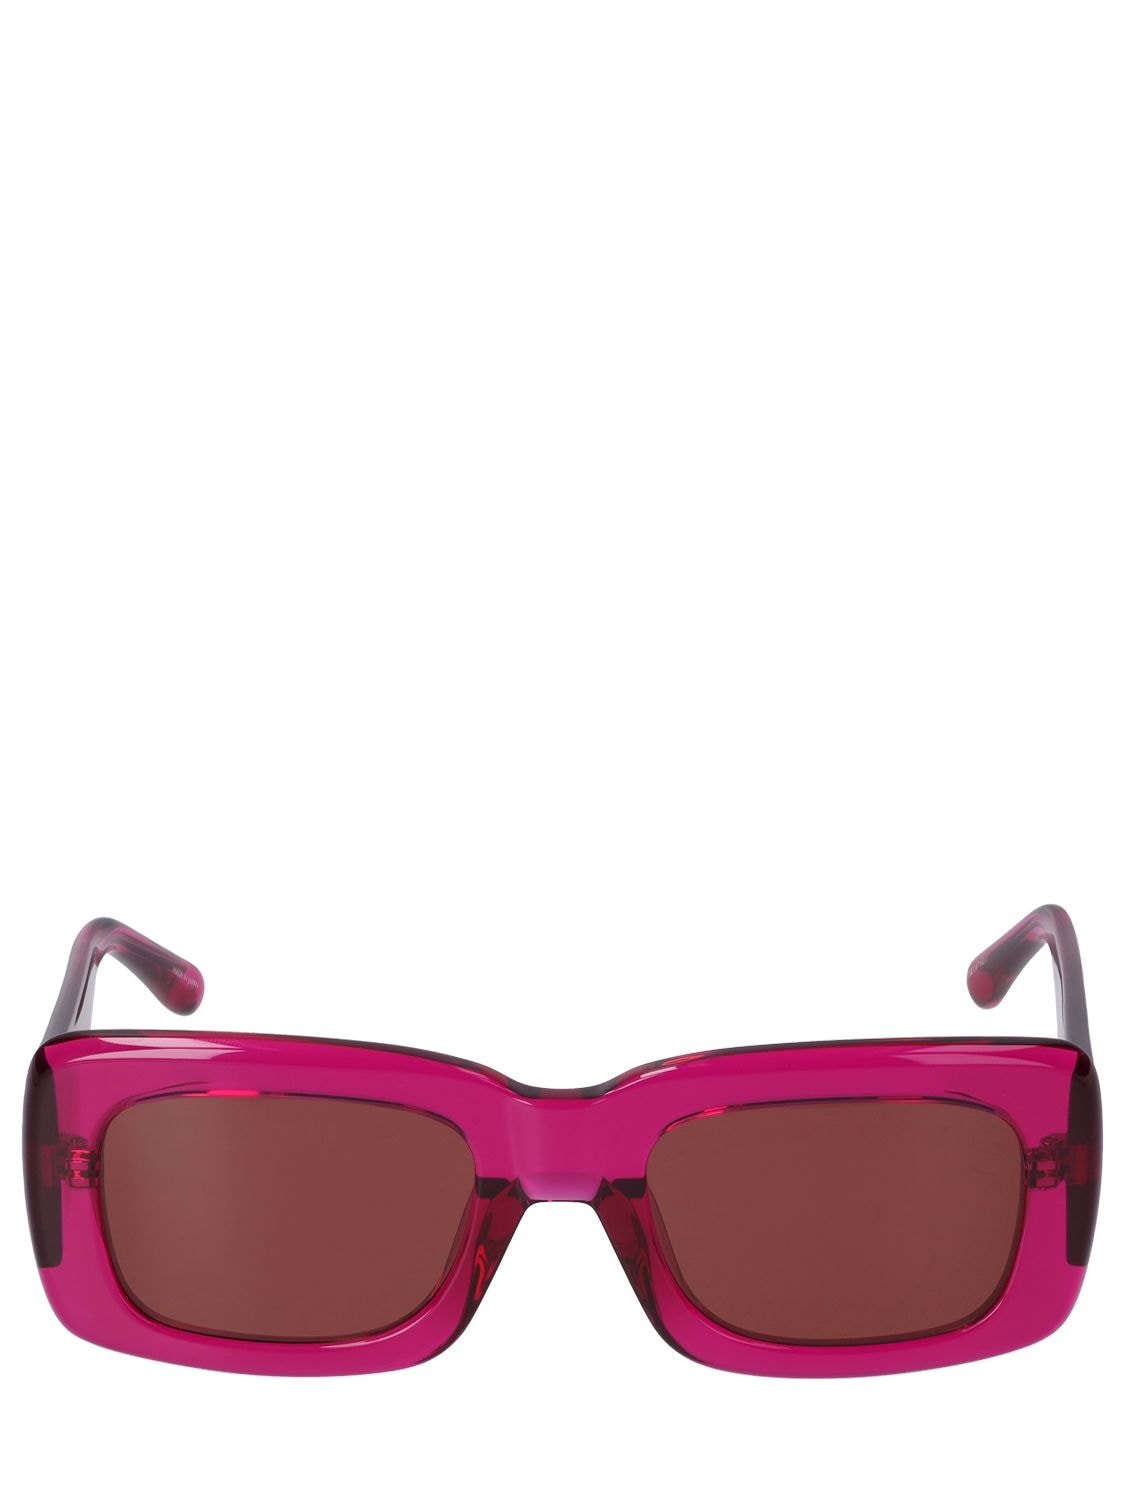 Image of Marfa Squared Acetate Sunglasses